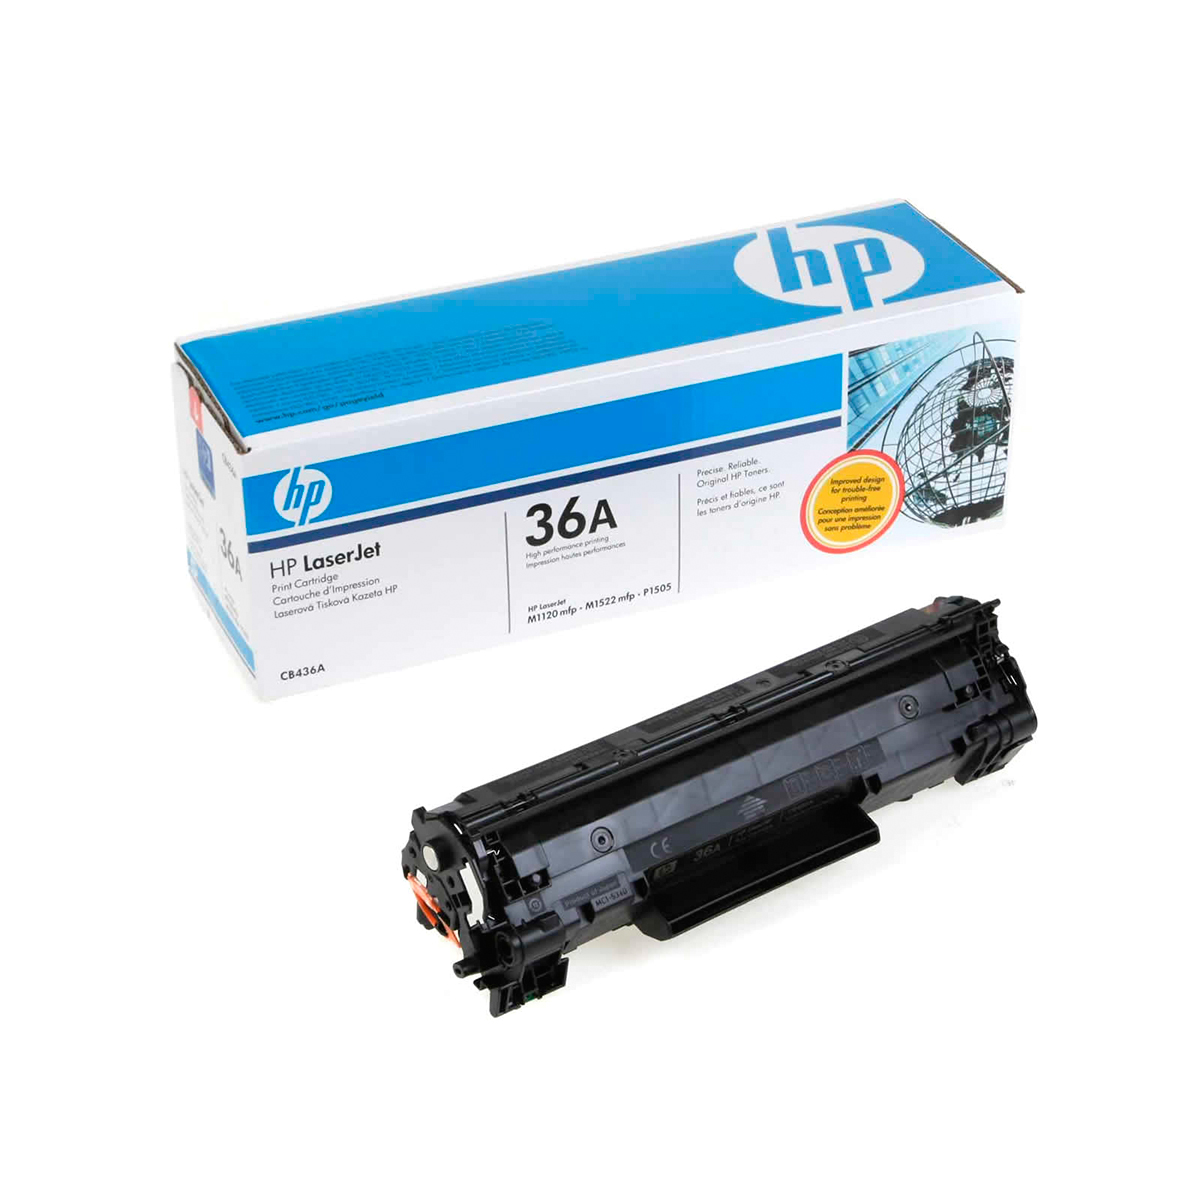 Заправка картриджа HP CB436A для LaserJet M1120, M1522, P1505